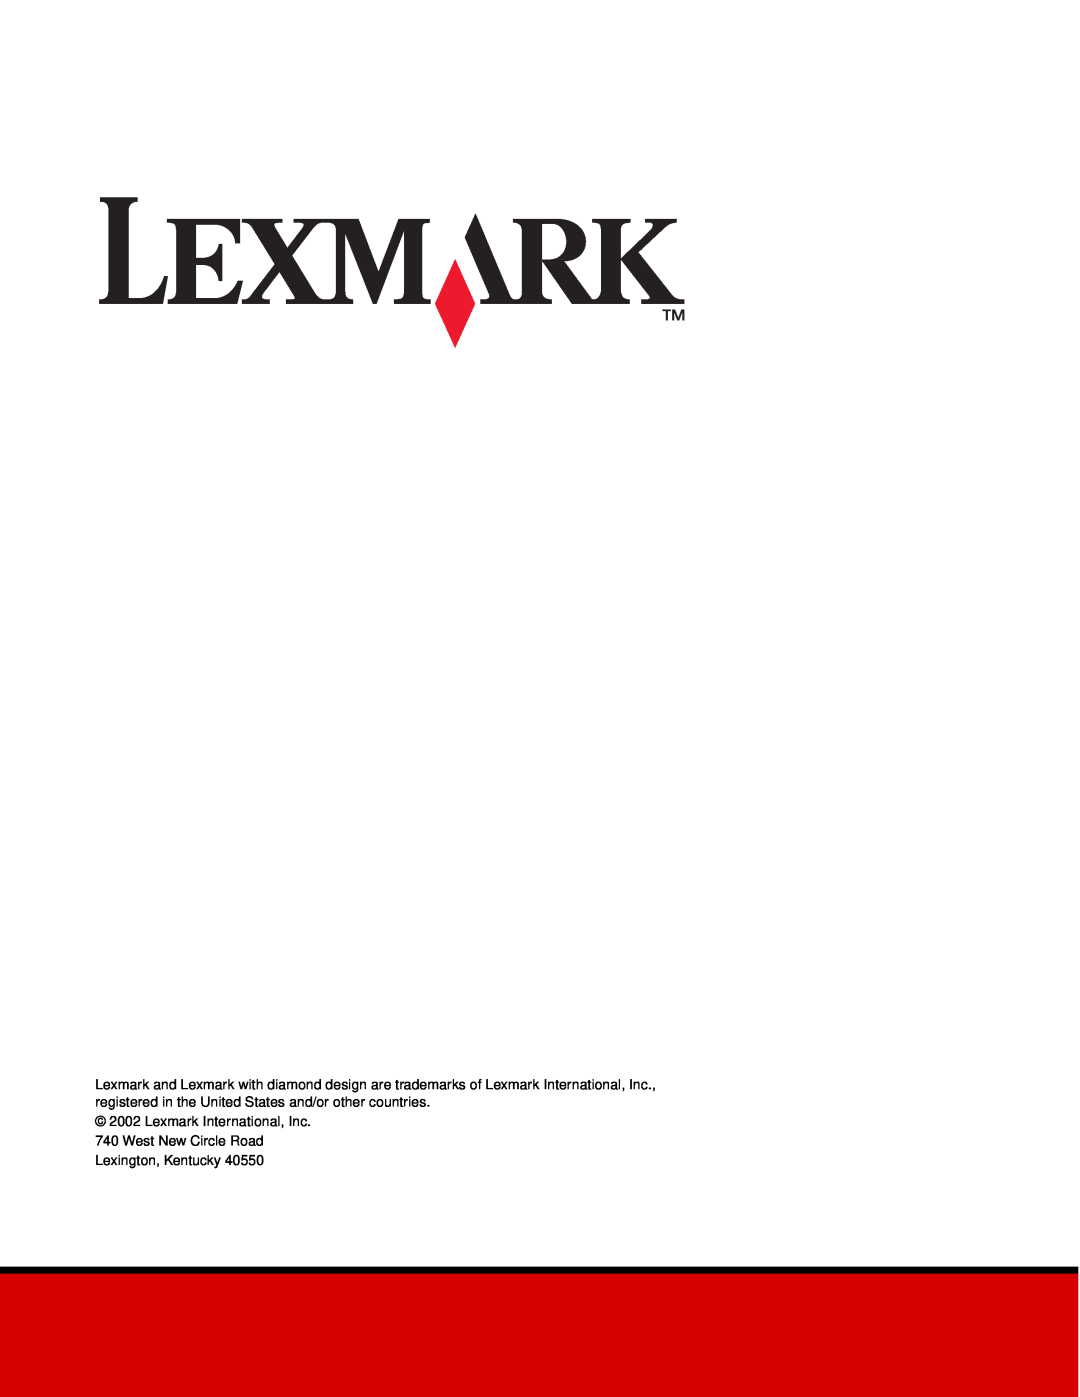 Lexmark 812 manual Lexmark International, Inc 740 West New Circle Road, Lexington, Kentucky 